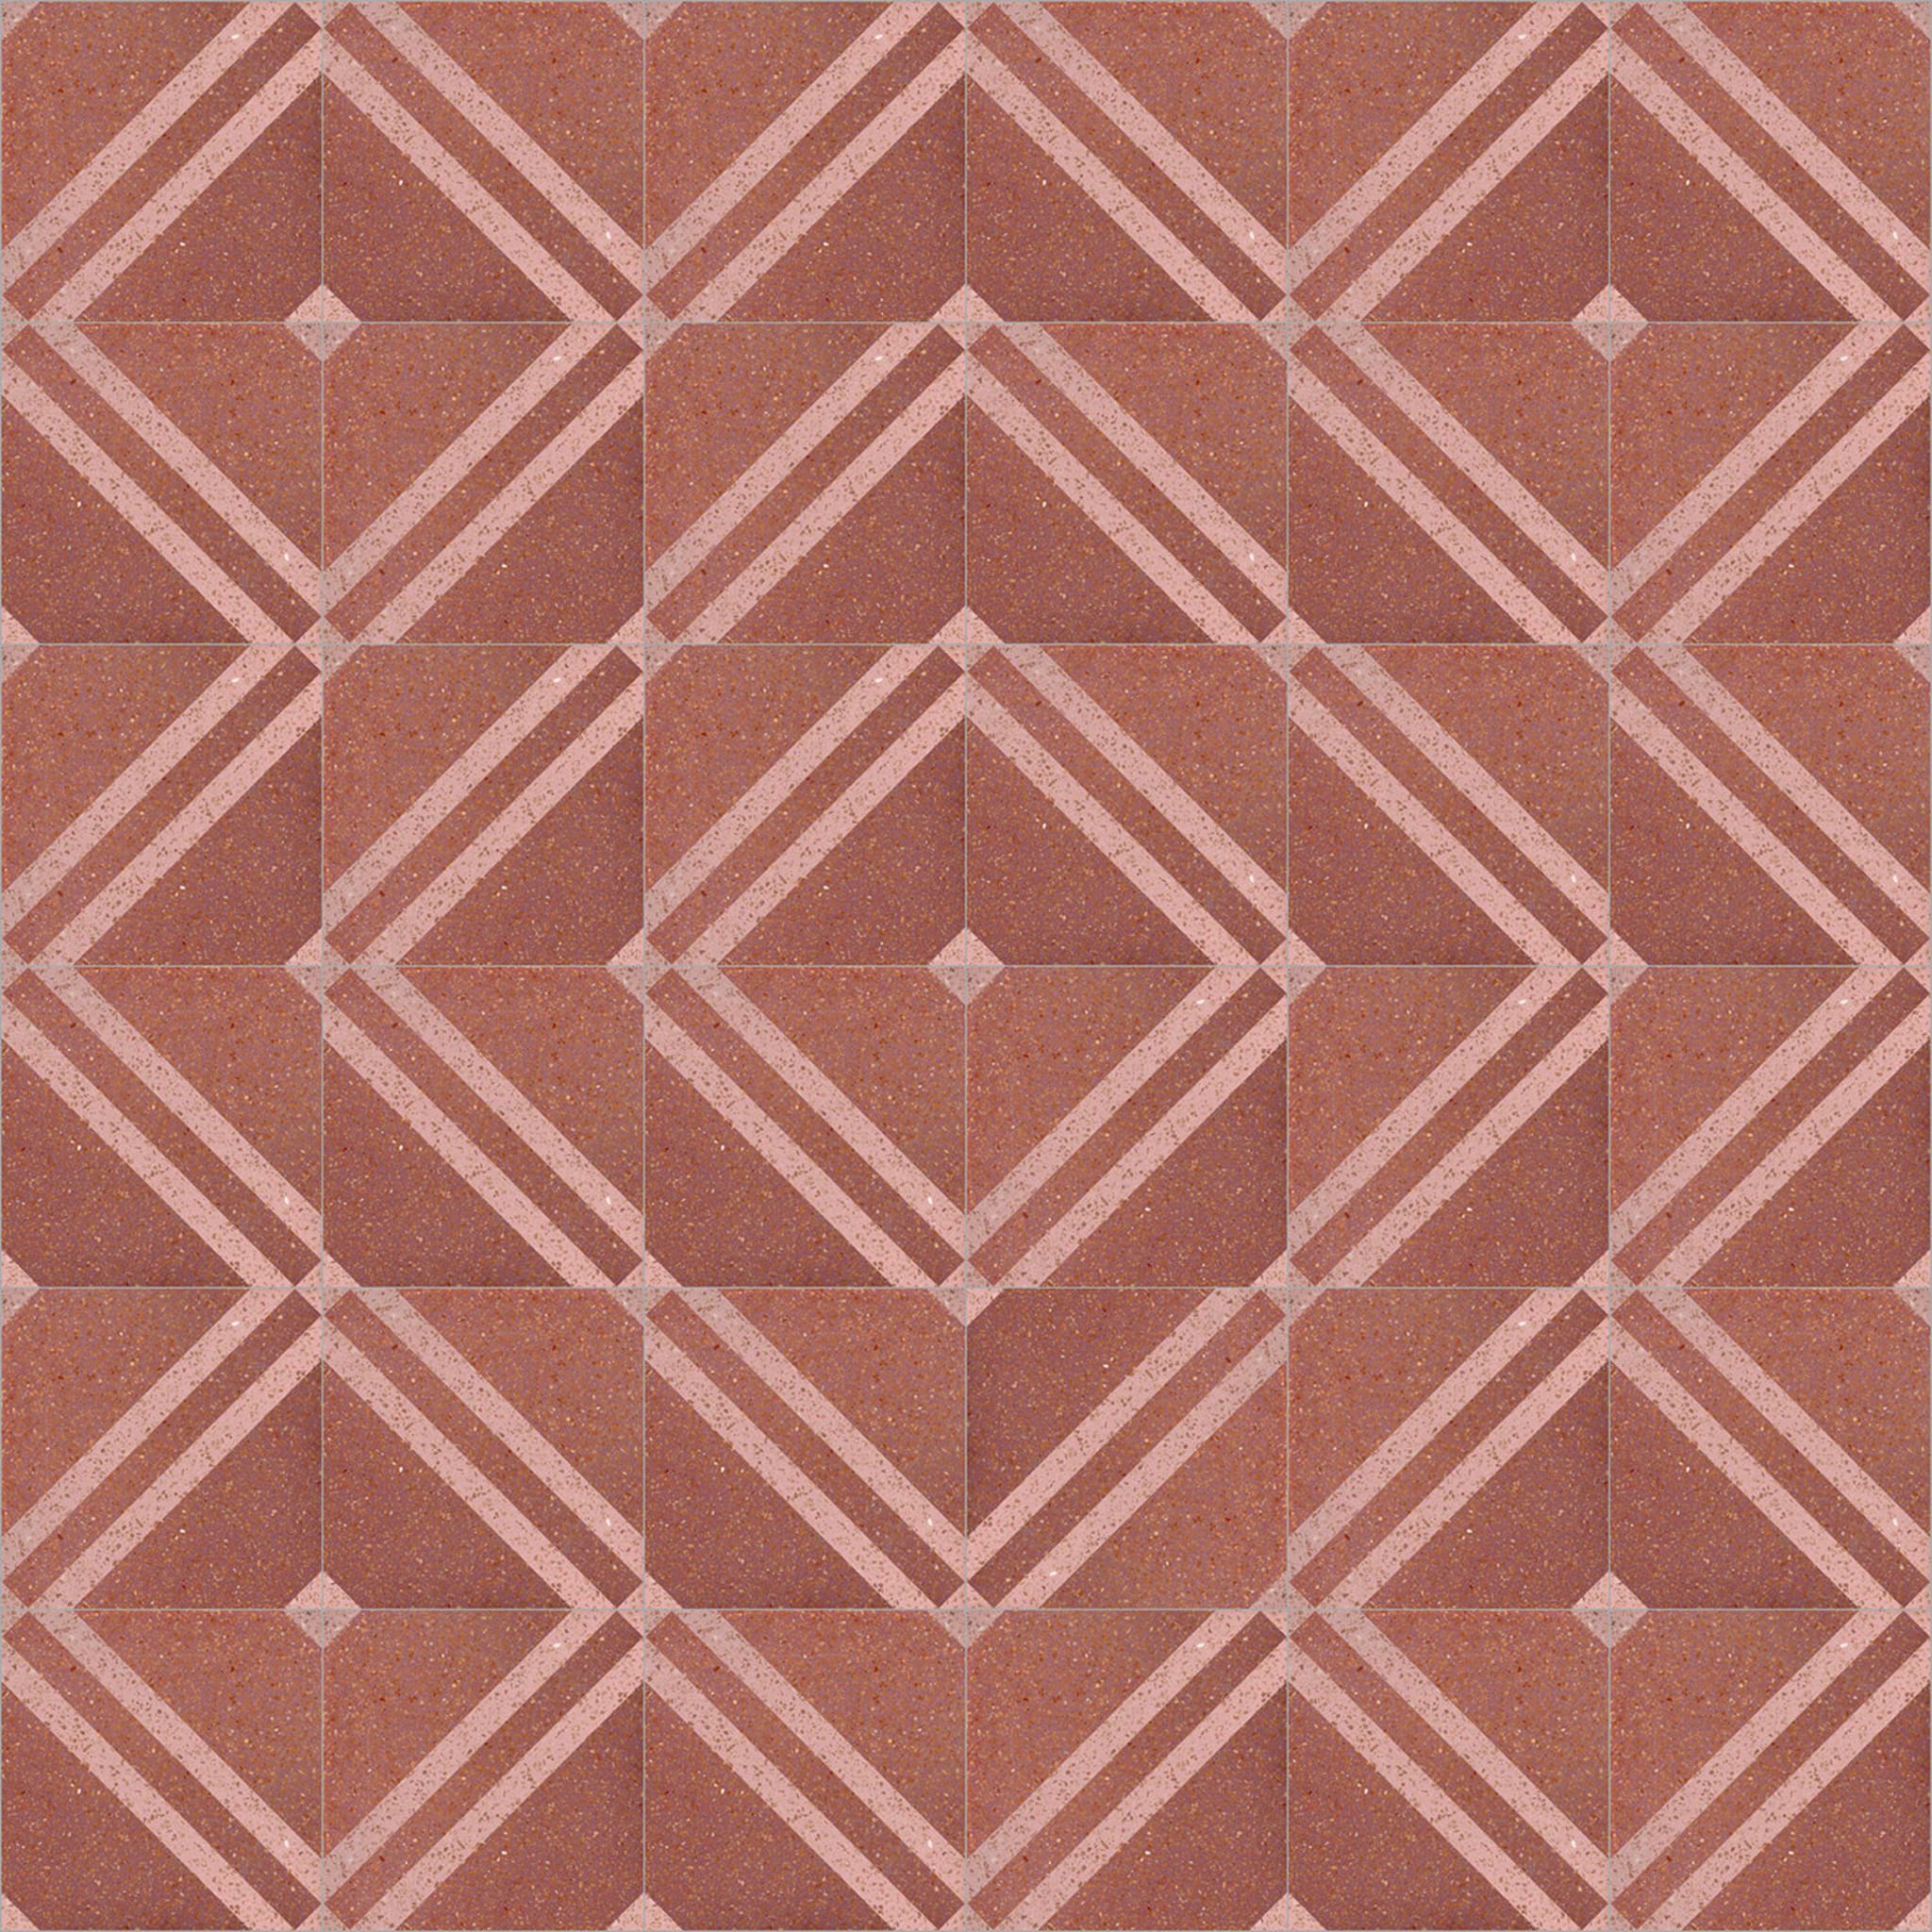 Longobardo Set of 25 Terrazzo Tiles - Alternative view 1